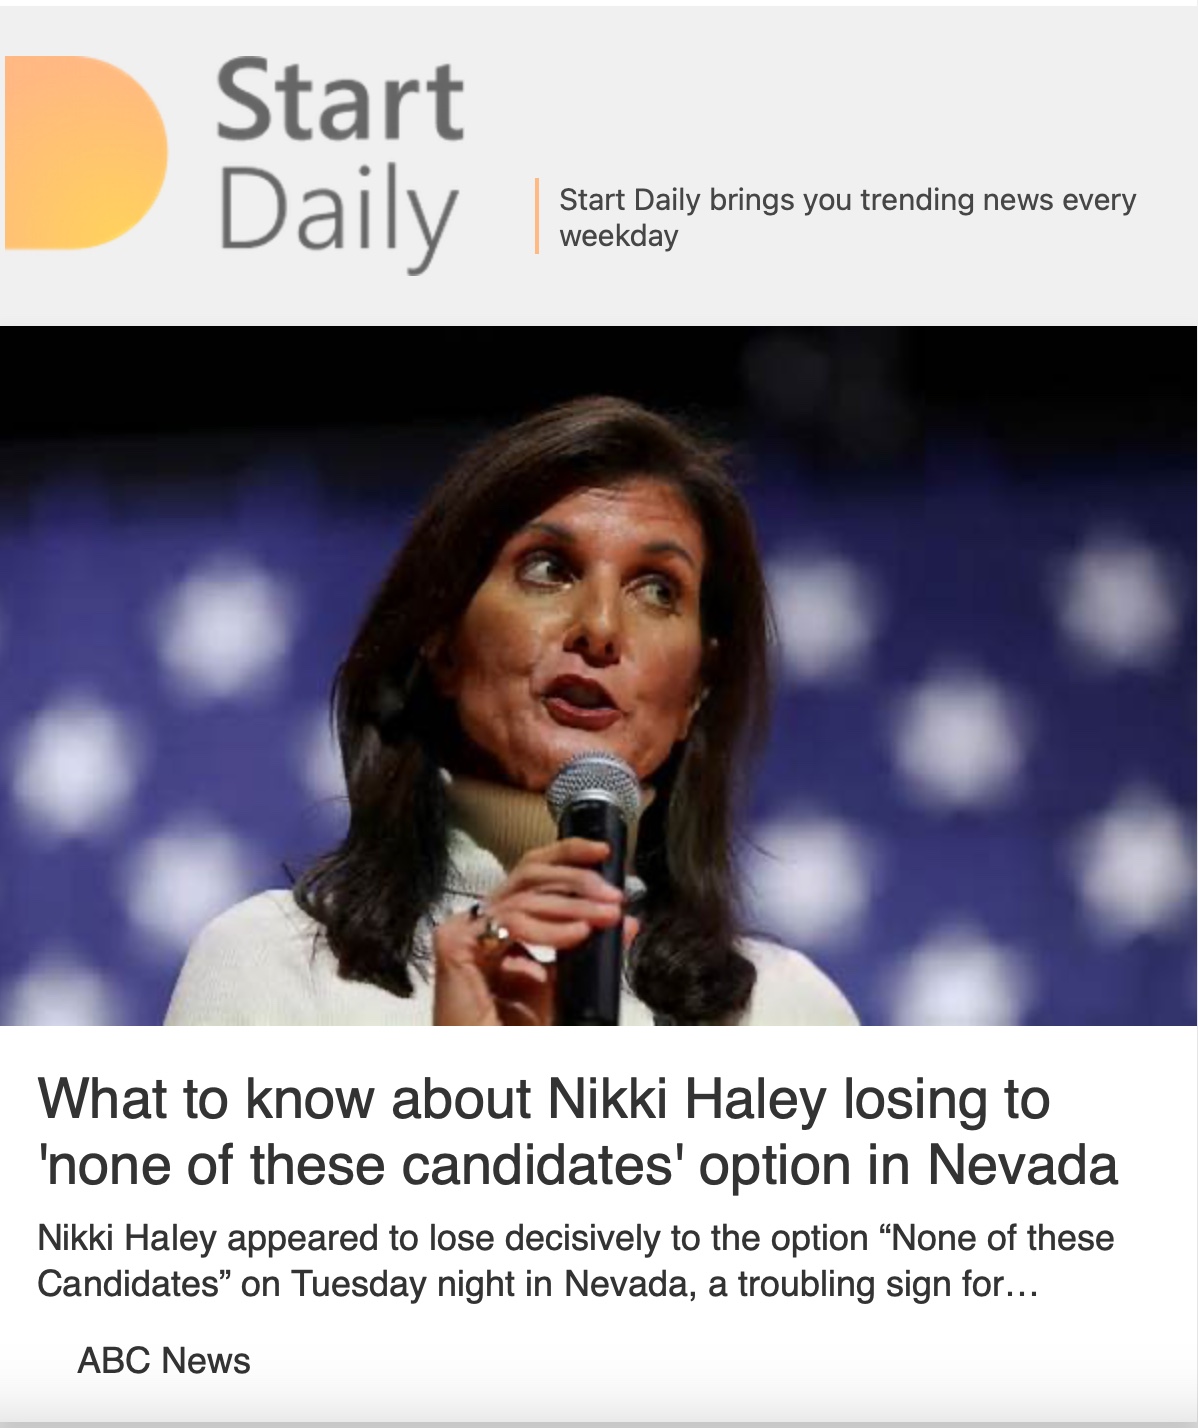 “Recent political upset: Former U.N. Ambassador Nikki Haley loses”